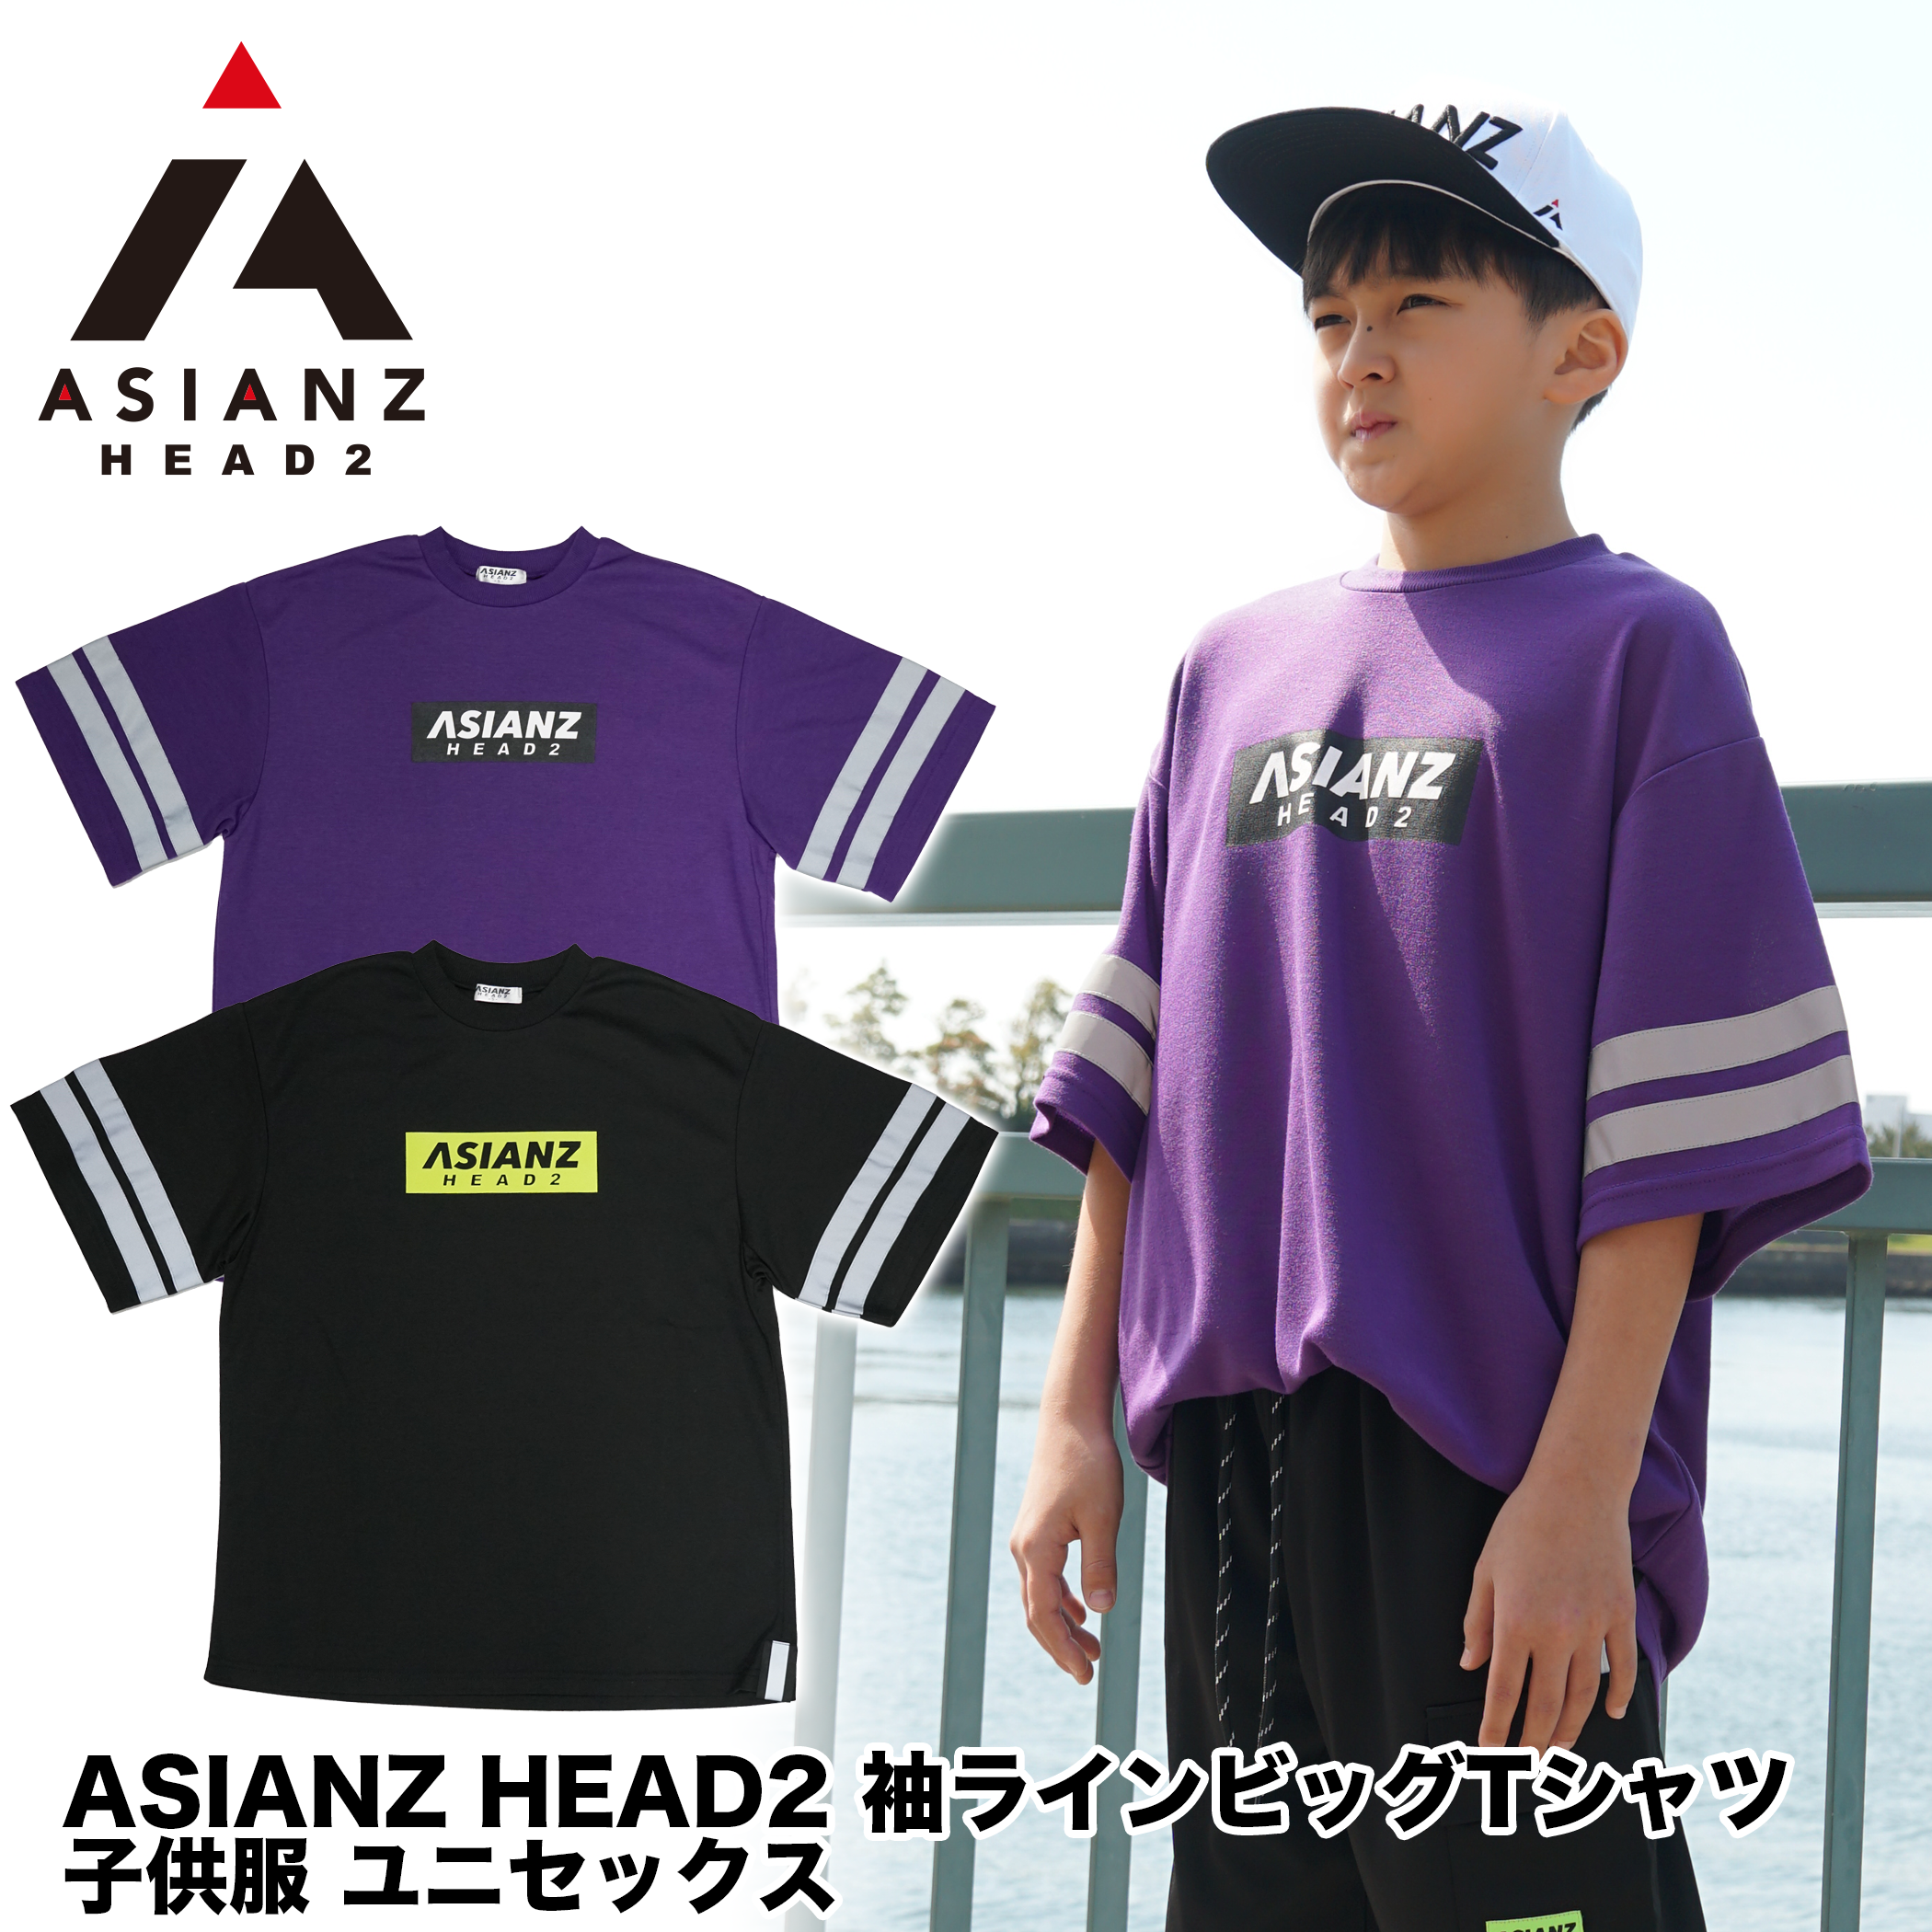 40%オフ! セール商品) ASIANZ HEAD2 袖ラインビッグTシャツ キッズウェアー ASIANZ  SPIRIT WORKER